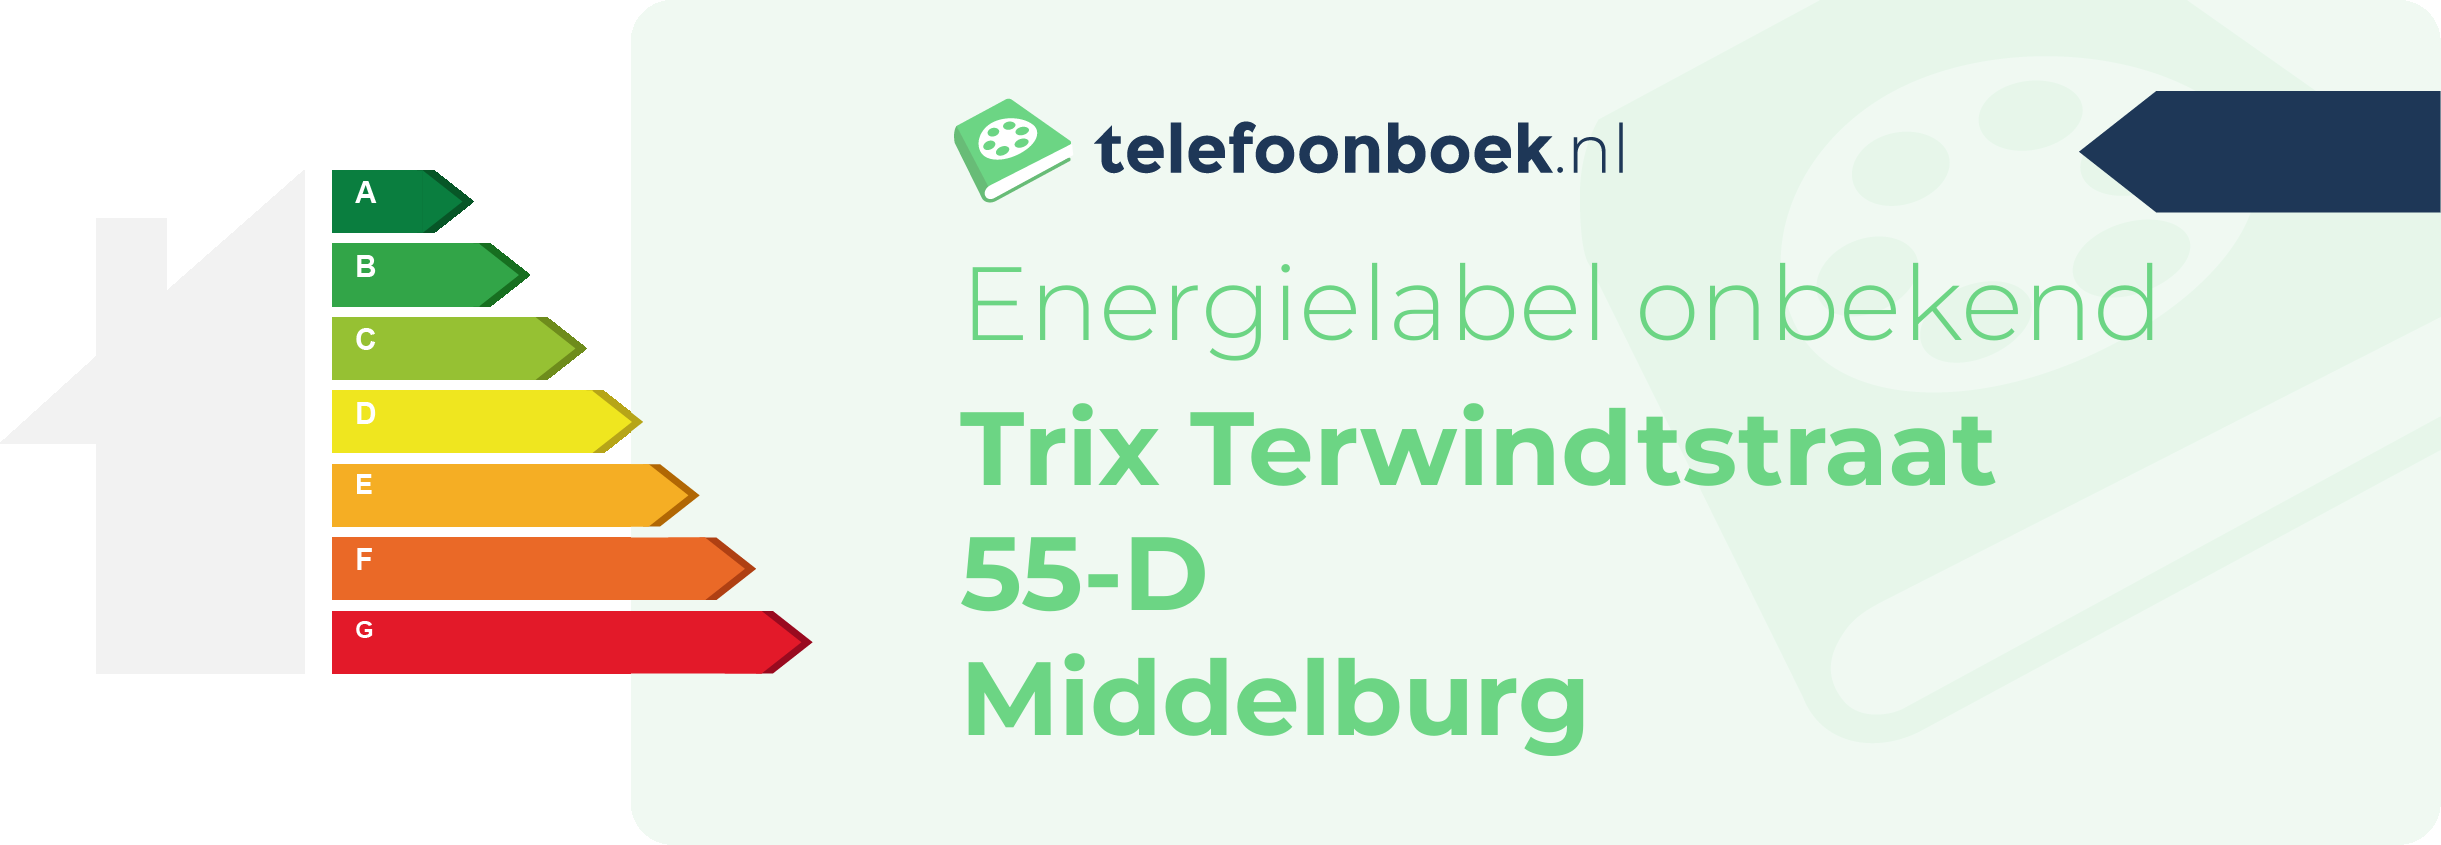 Energielabel Trix Terwindtstraat 55-D Middelburg